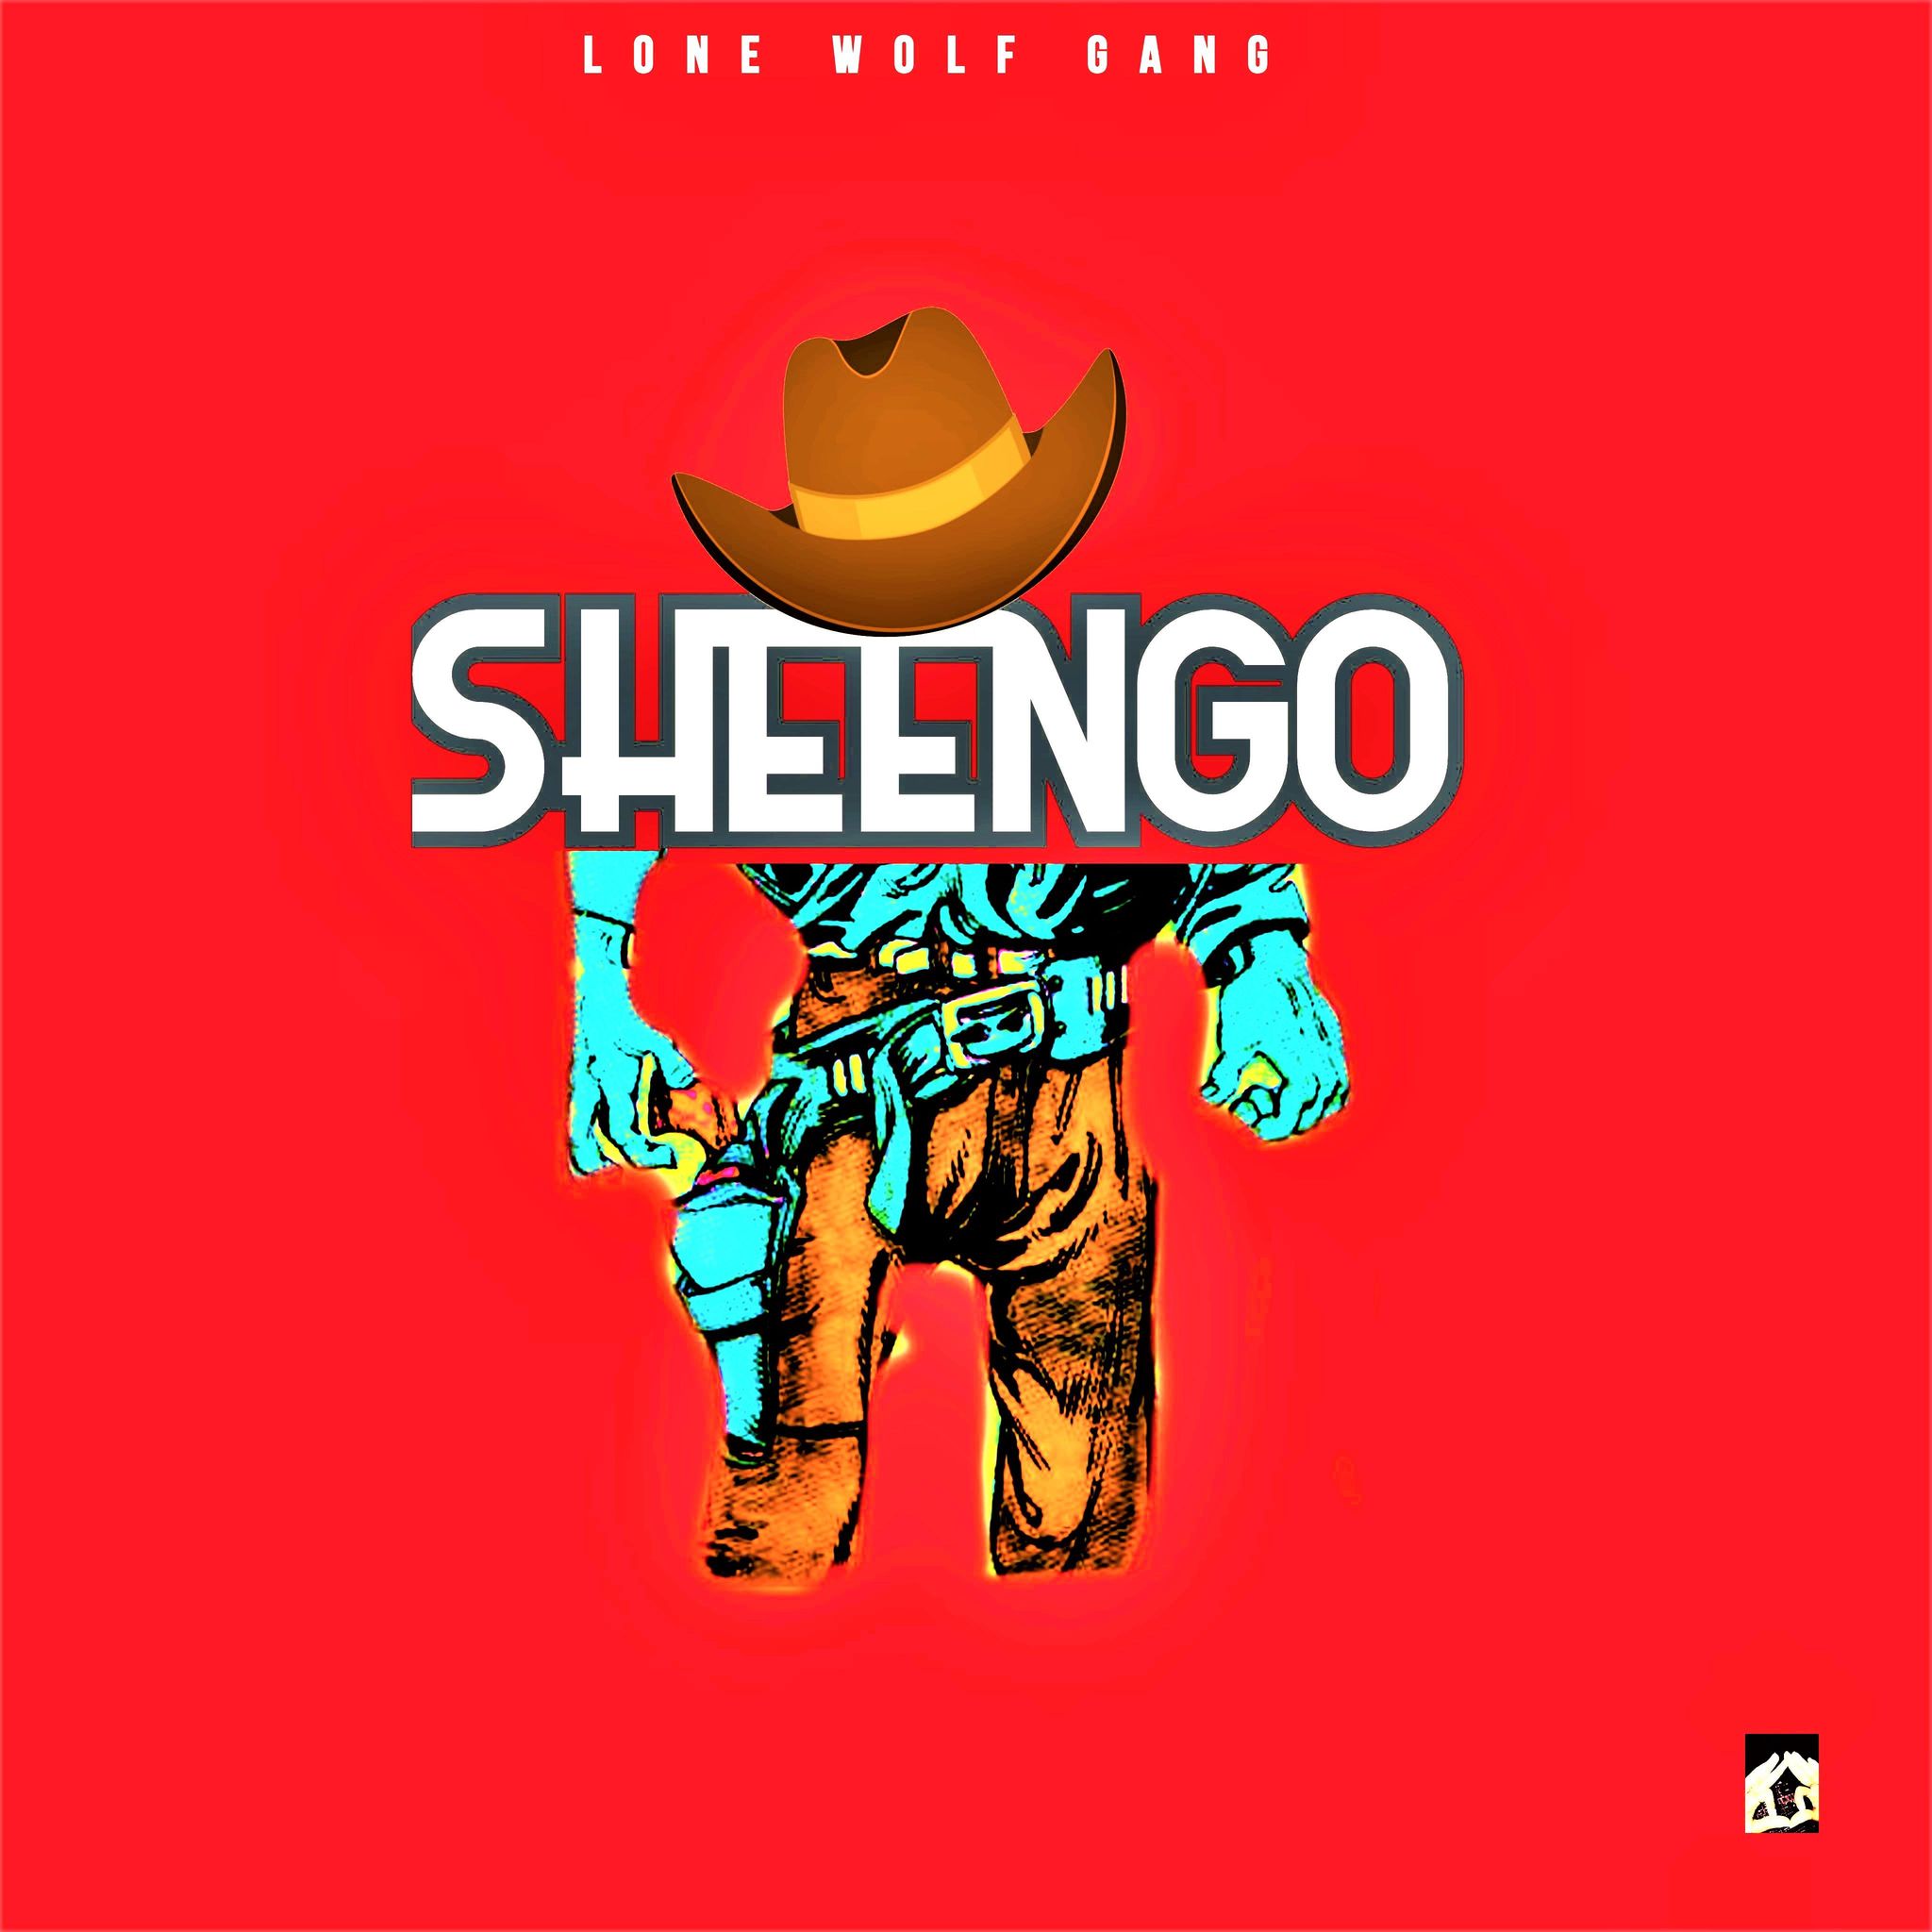 Sheengo